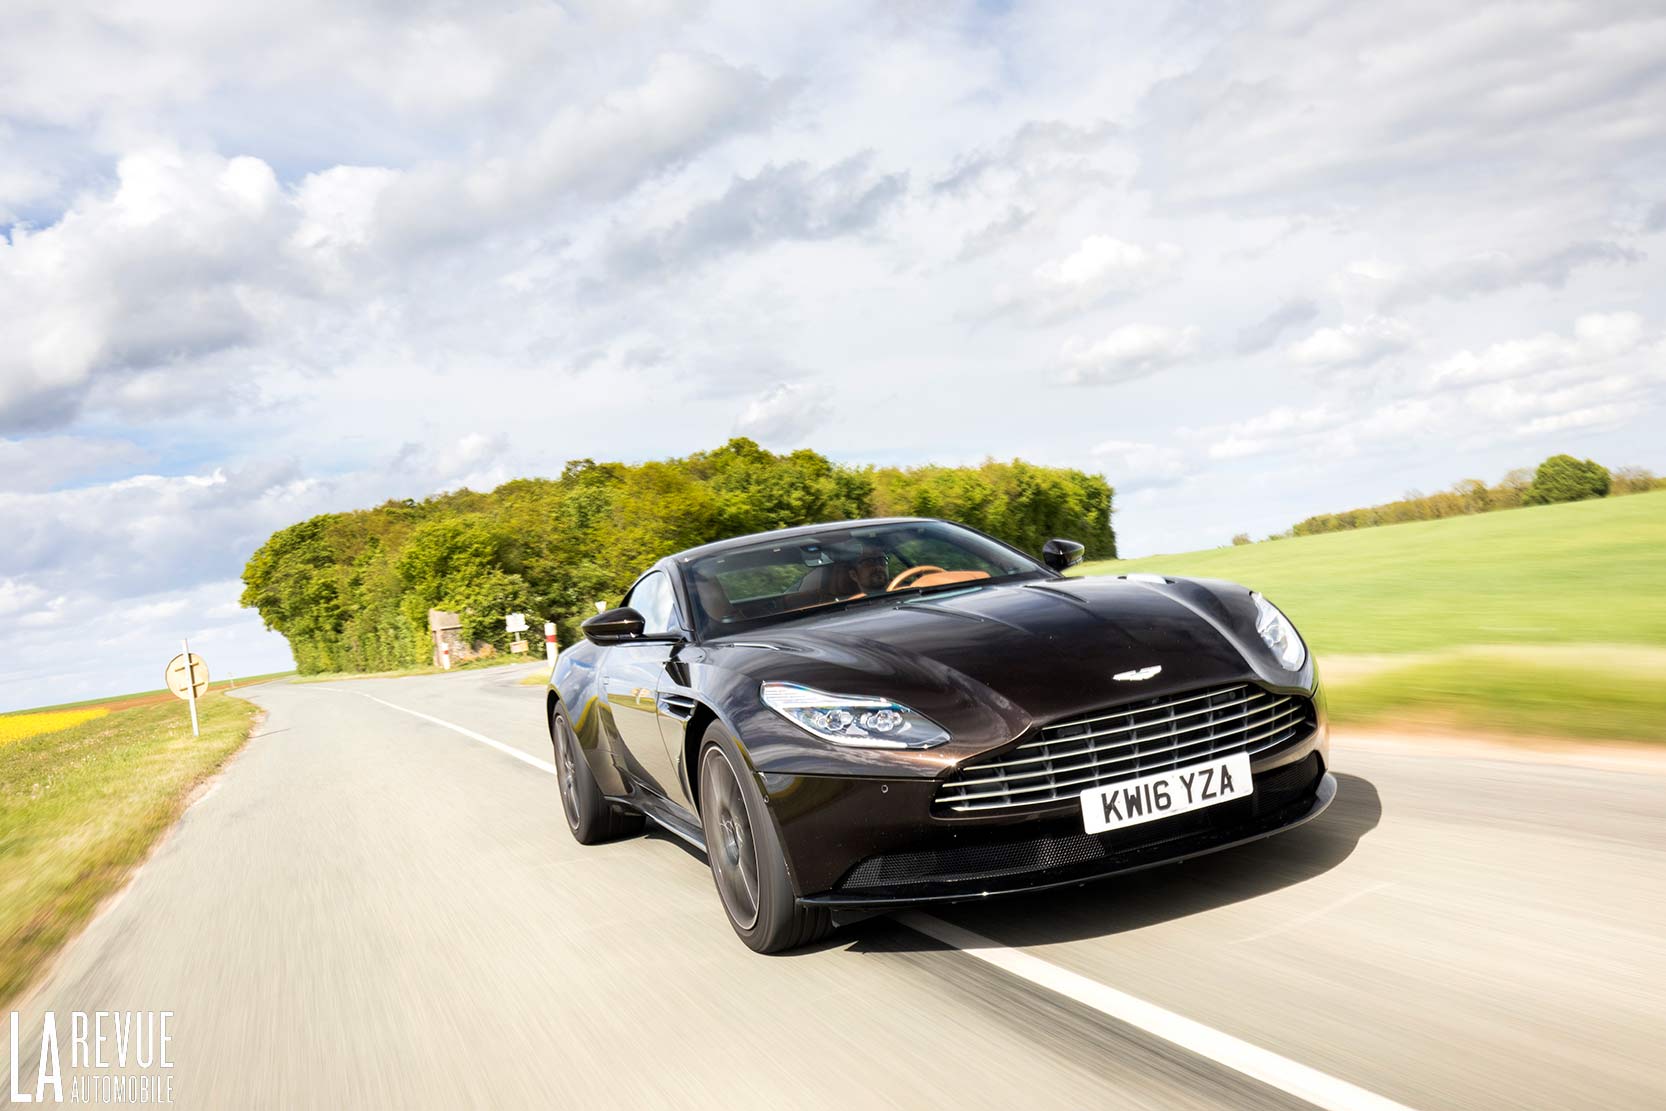 Image principale de l'actu: Aston martin prevoit un coupe a moteur central arriere pour 2020 